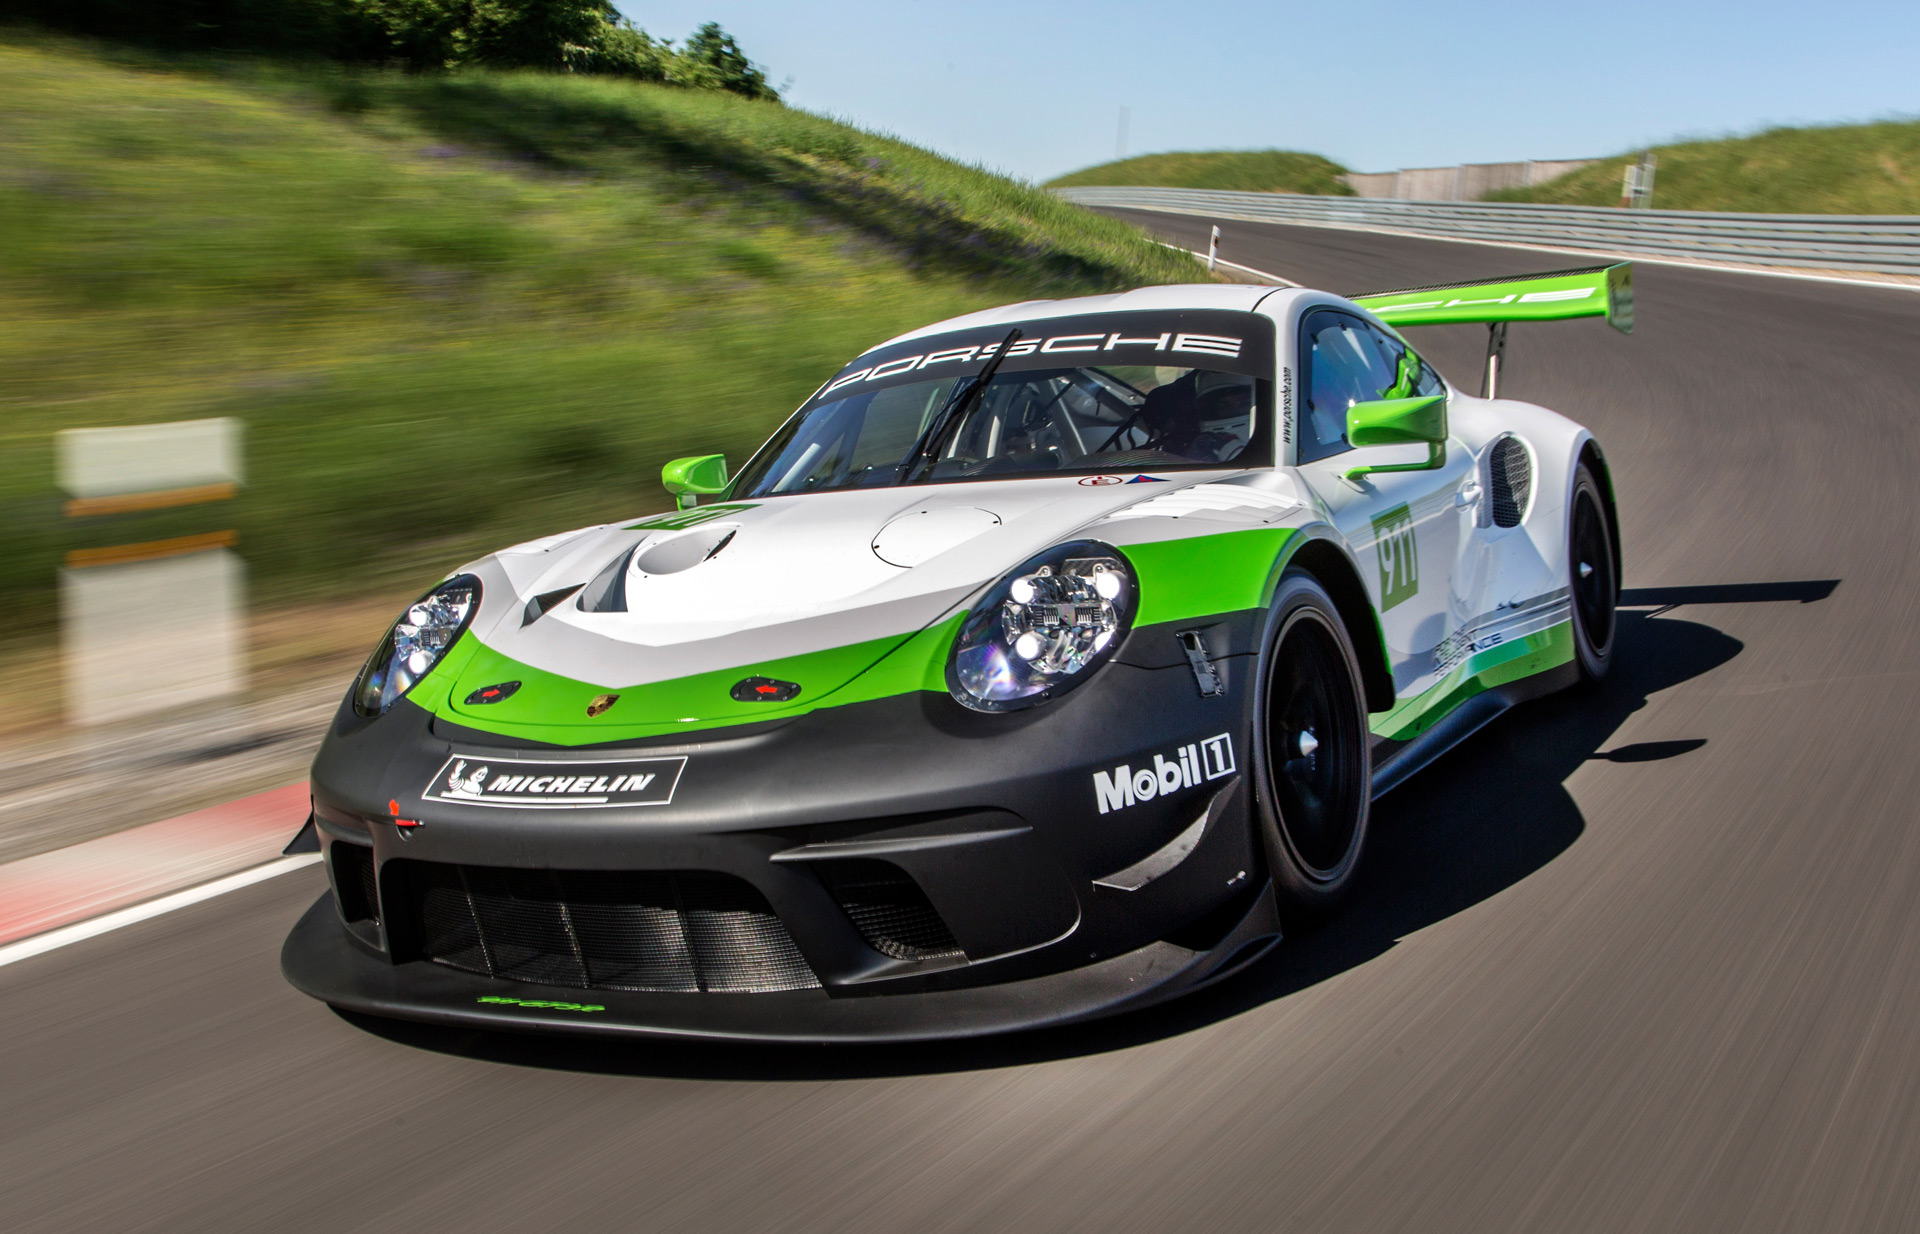 2019 Porsche 911 GT3 R race car revealed